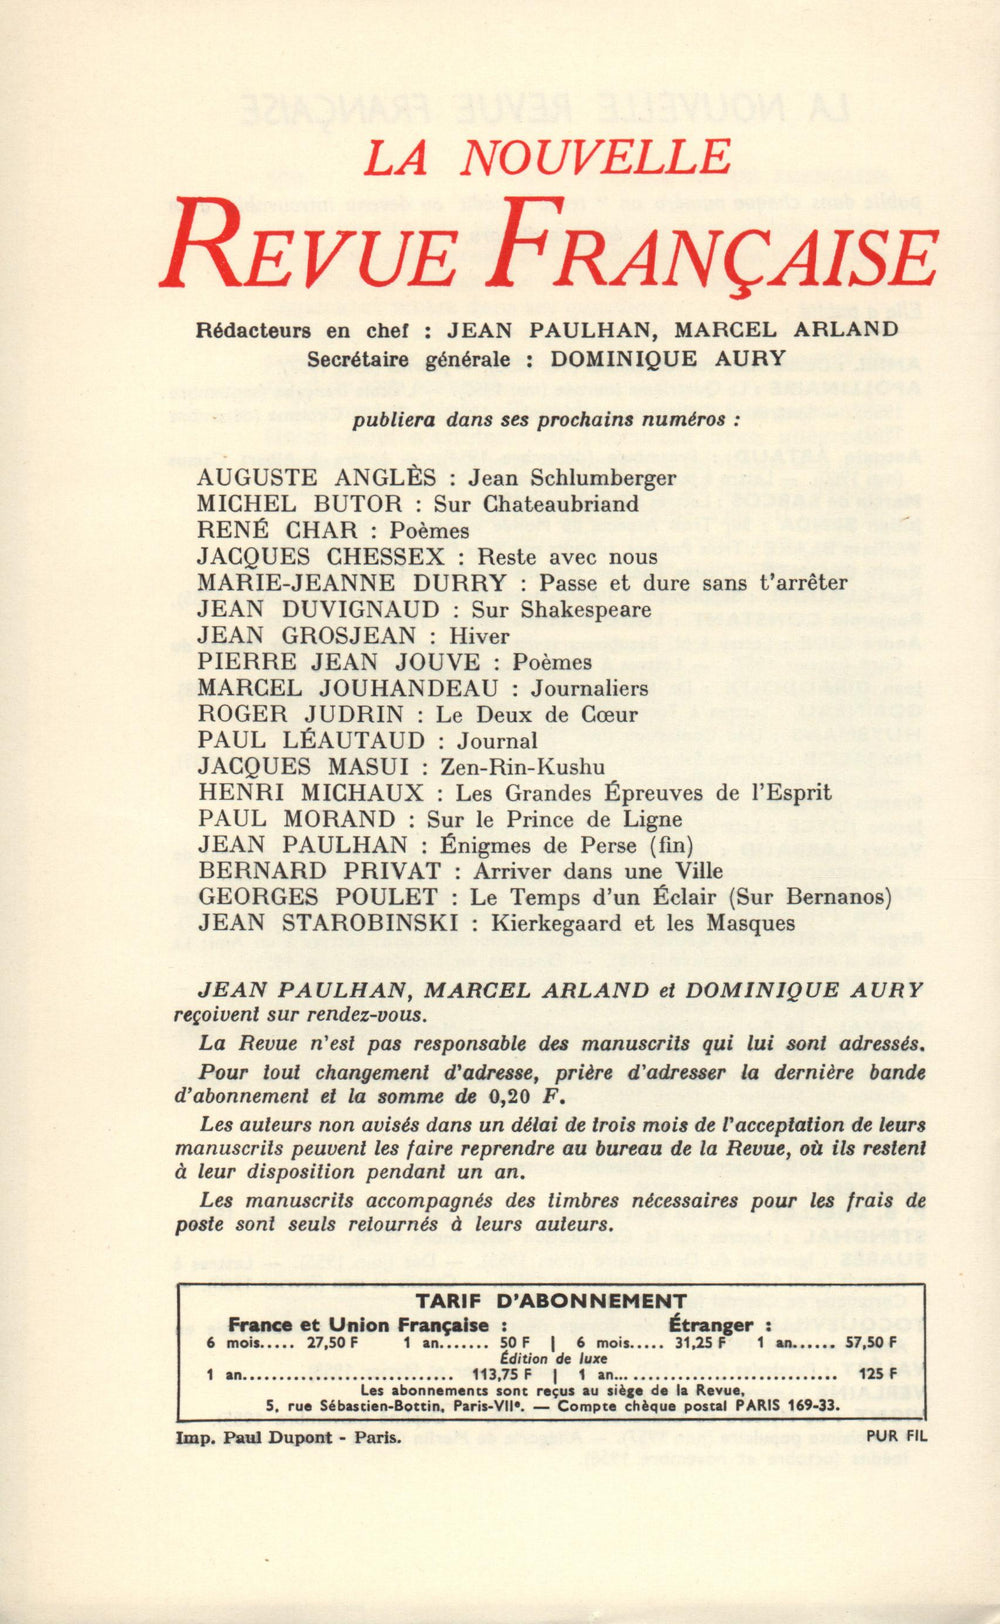 La Nouvelle Revue Française N' 129 (Septembre 1963)